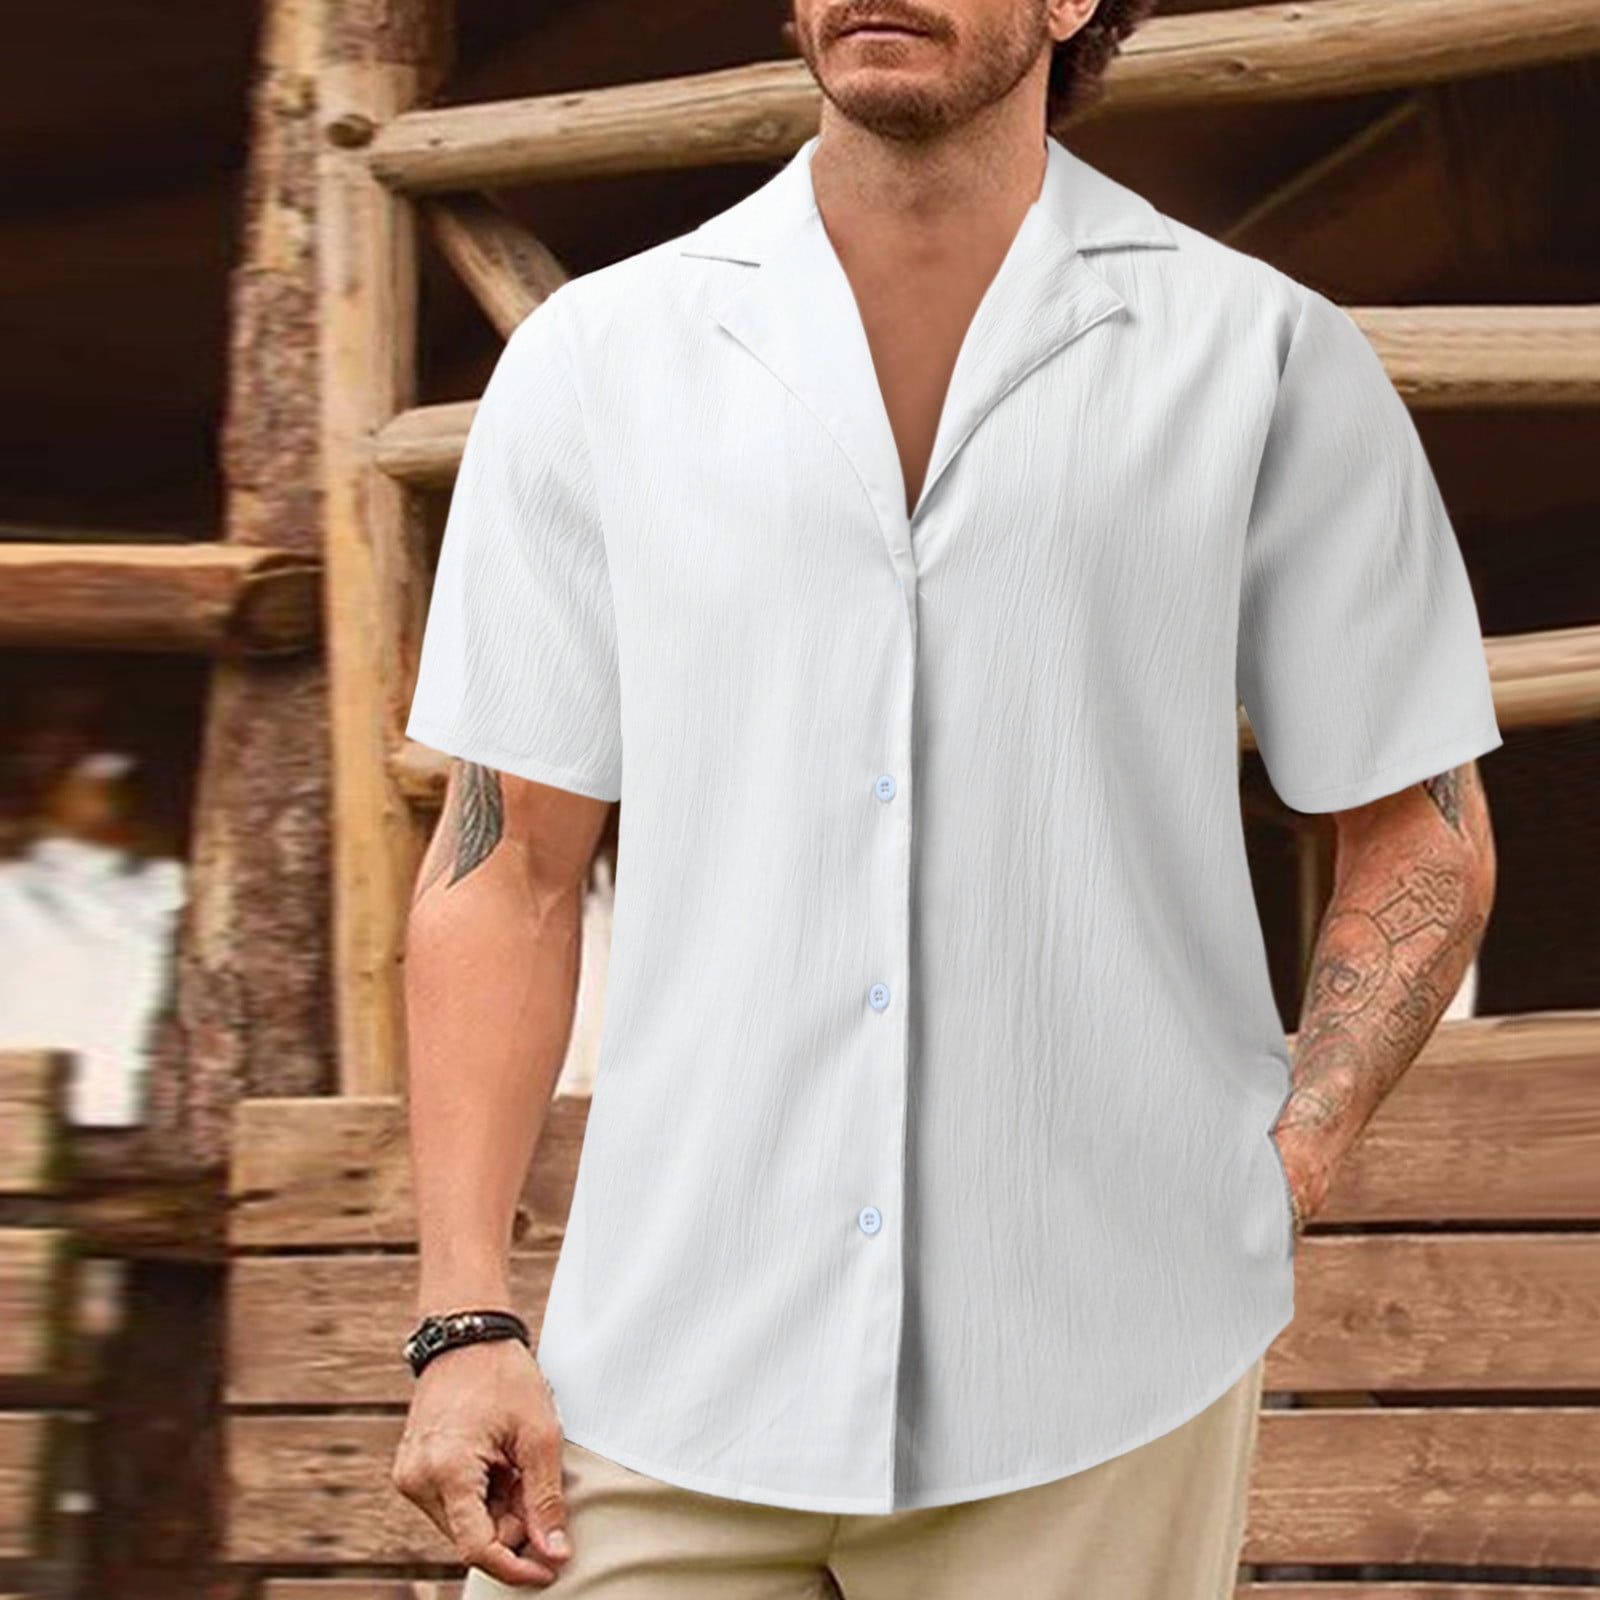 men’s button down white dress shirt